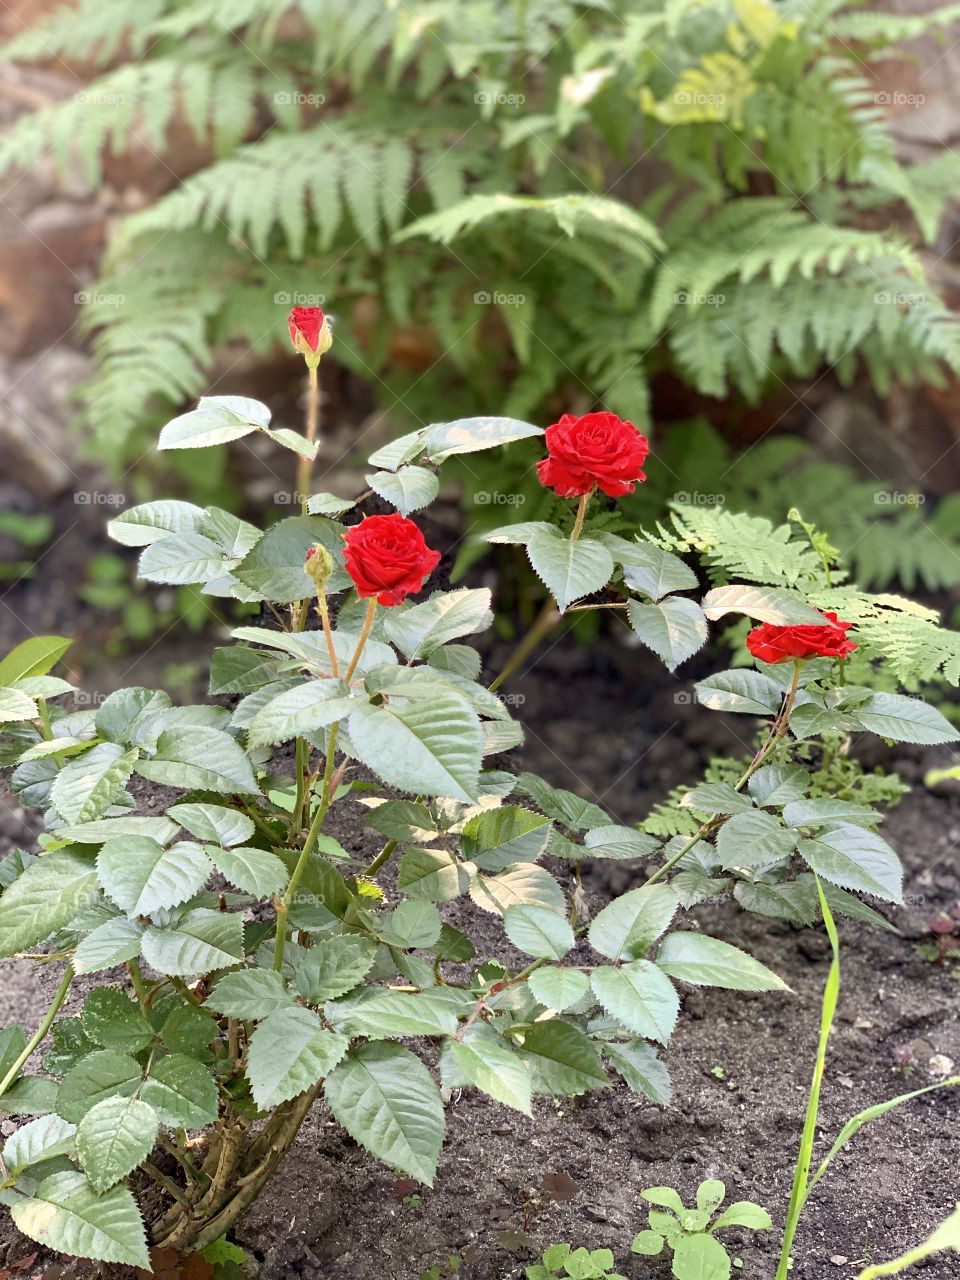 Scarlet roses in the flowerbed